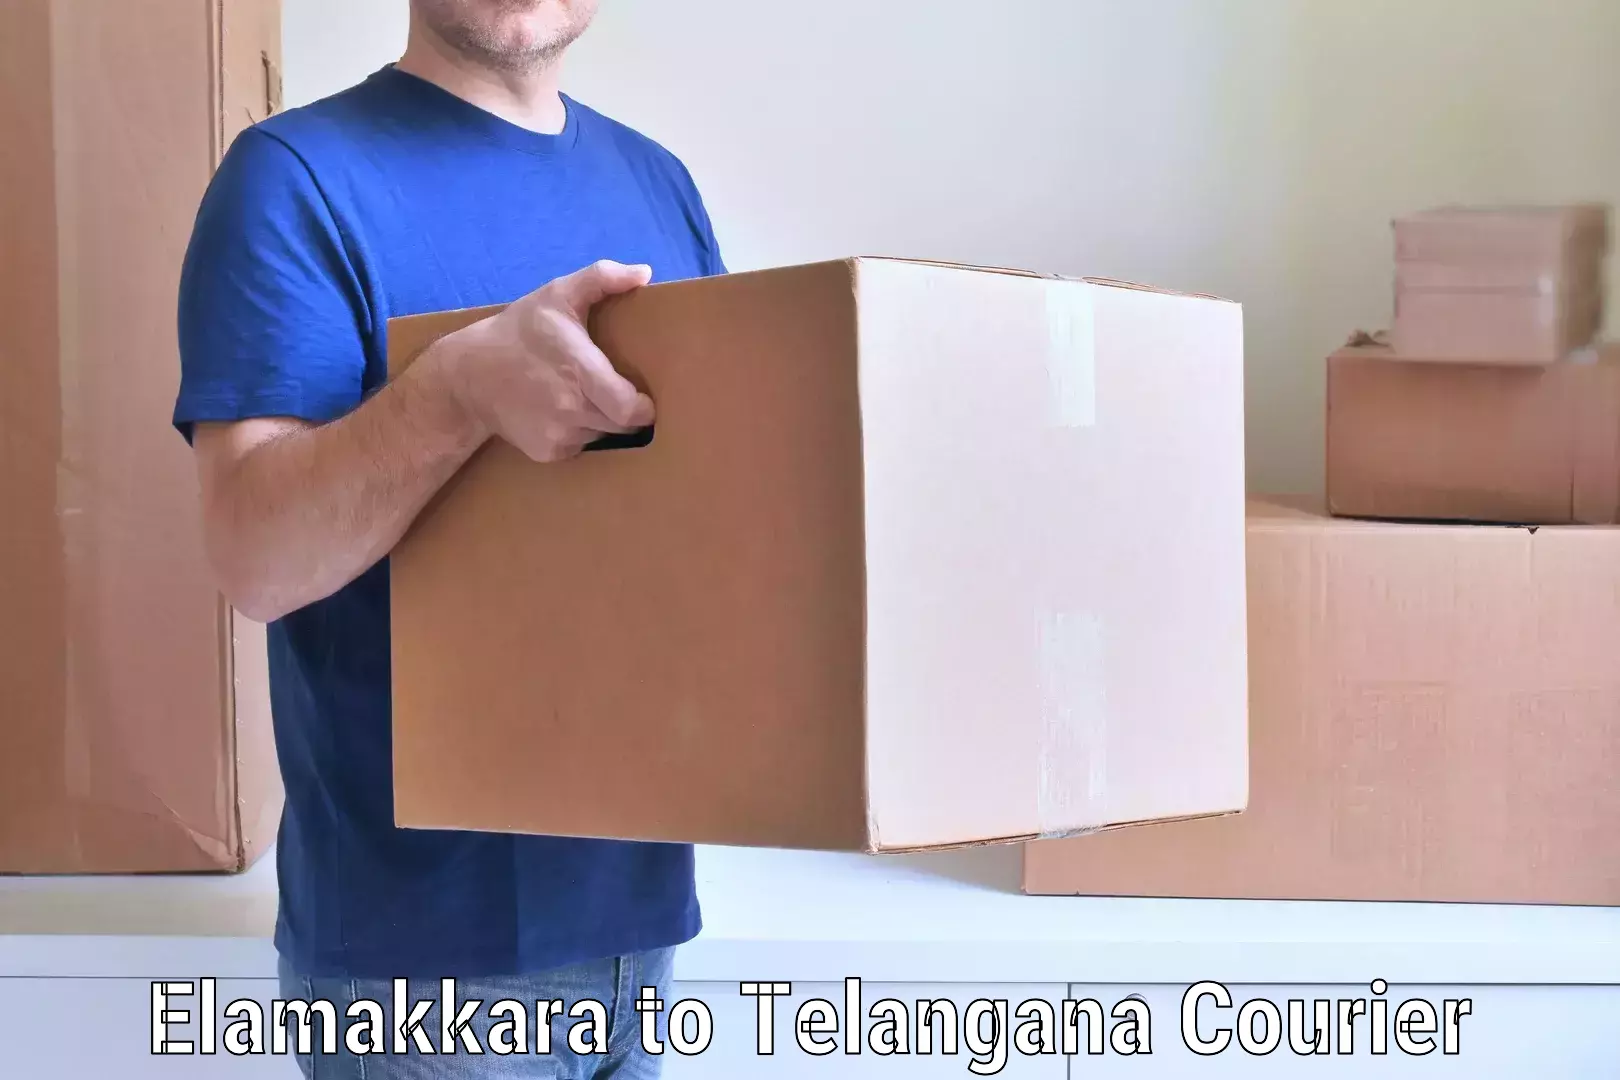 Trusted moving company Elamakkara to Amangal